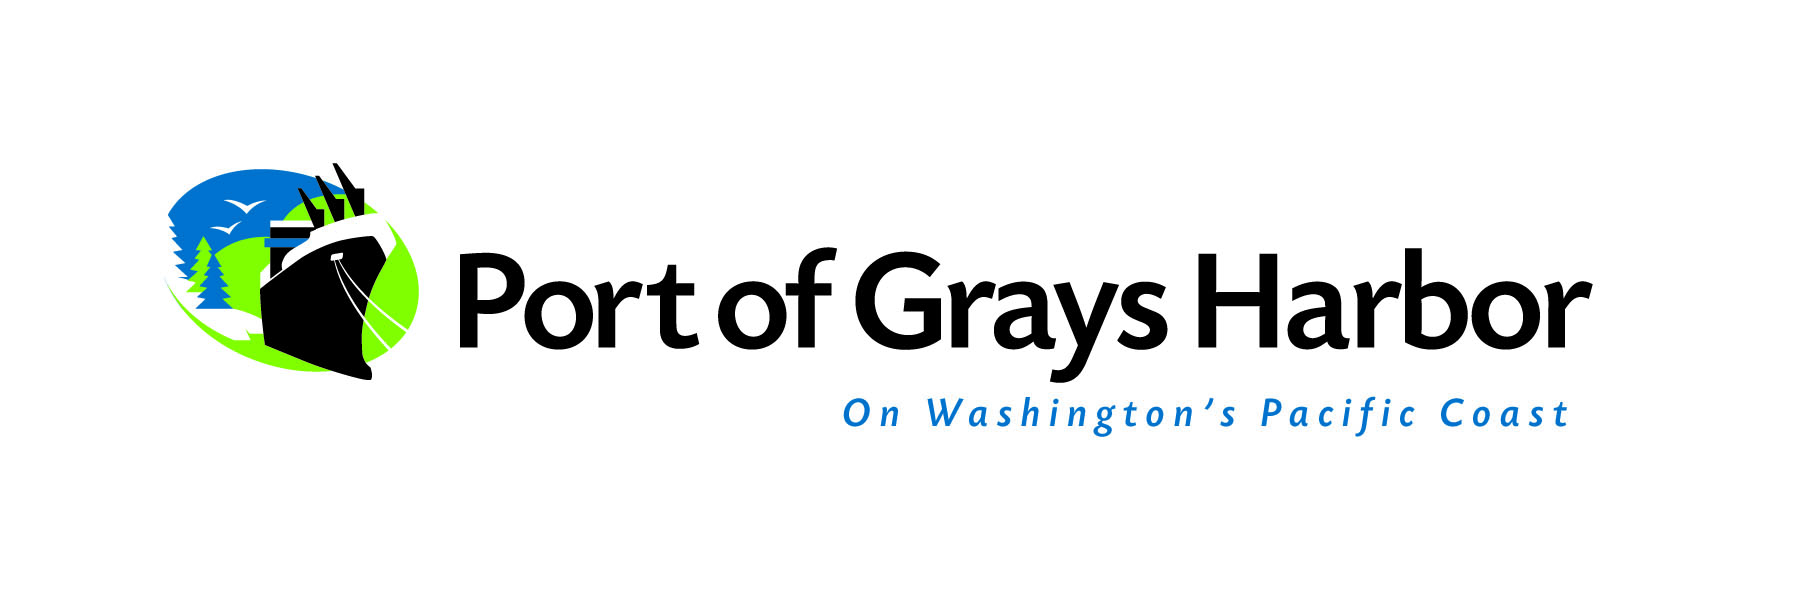 Logotipo del puerto de Grays Harbor